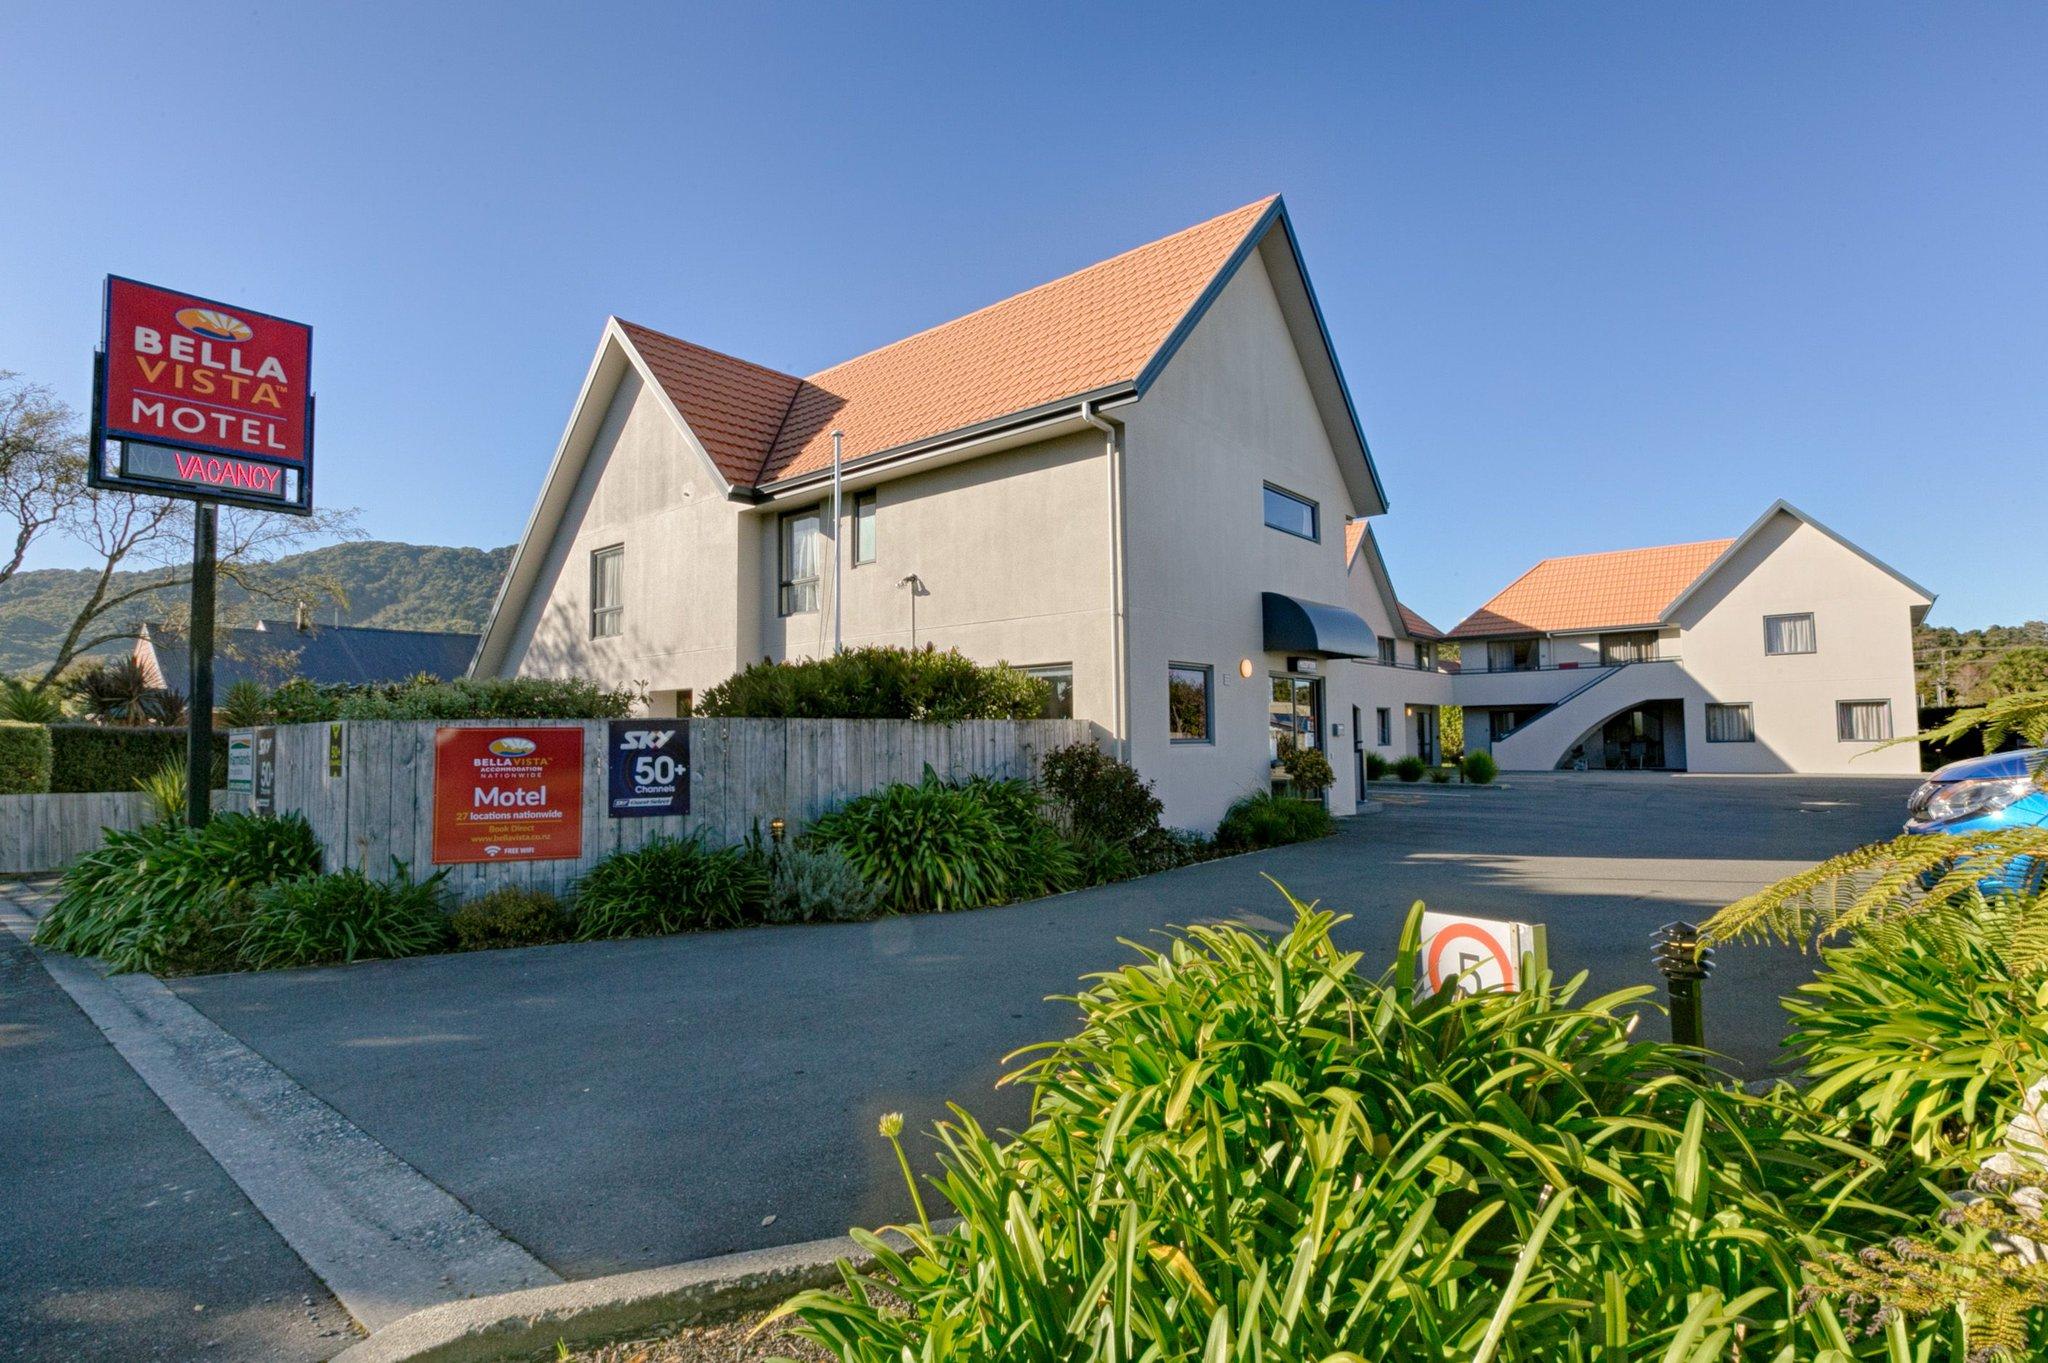 Bella Vista Motel Greymouth in Greymouth, NZ